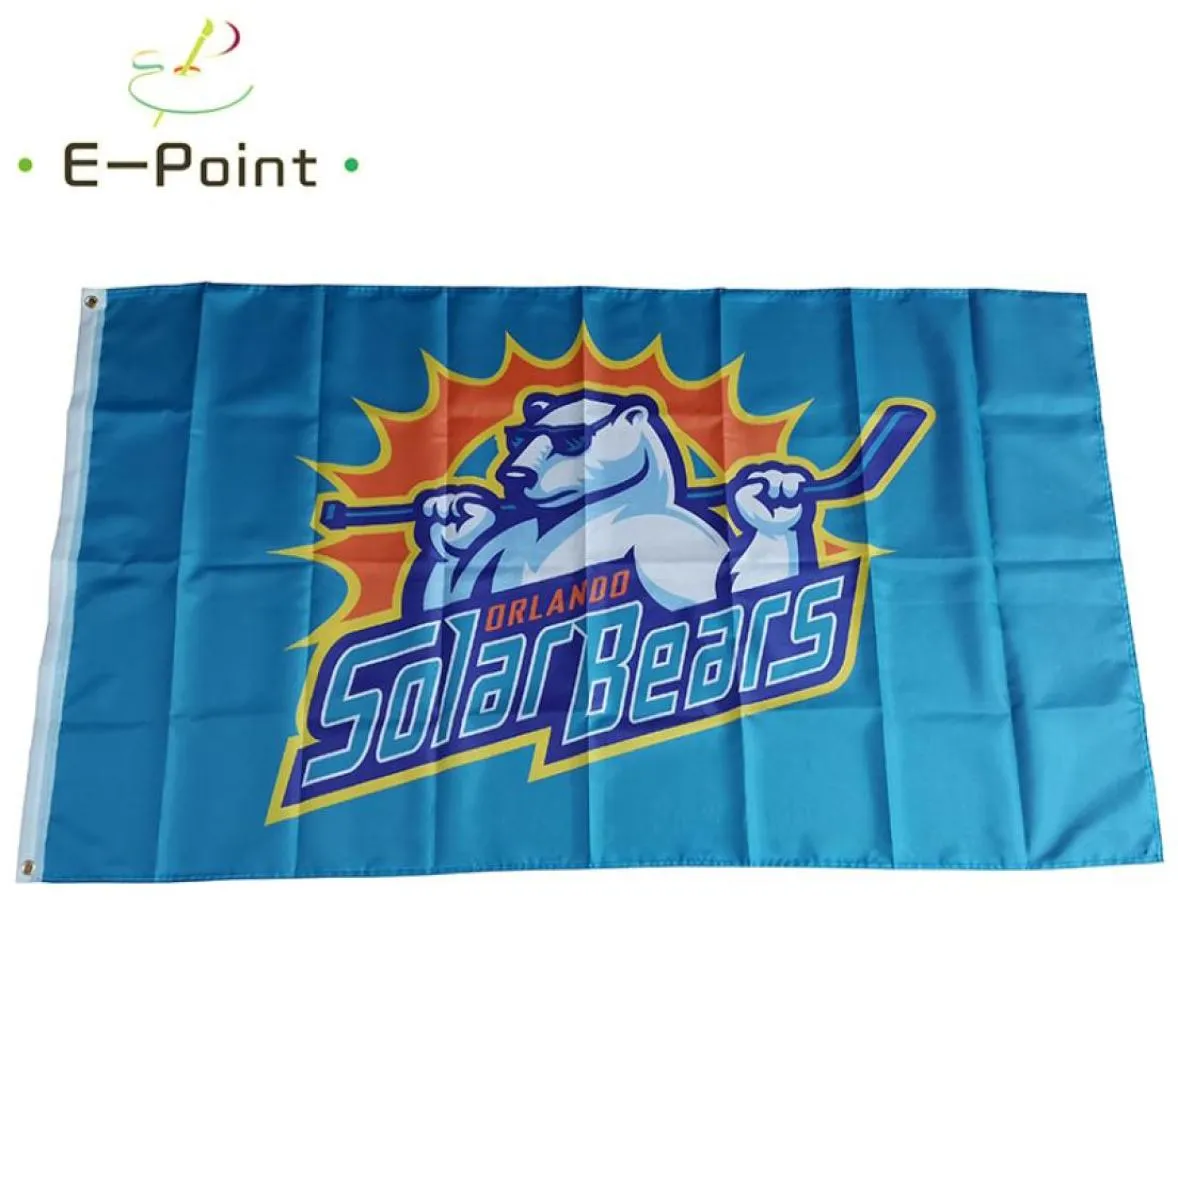 Echl Orlando Solar Bears Flag 35ft 90 cm150 cm Polyester Banner -Dekoration Flieger Hausgarten Festliche Geschenke1422298